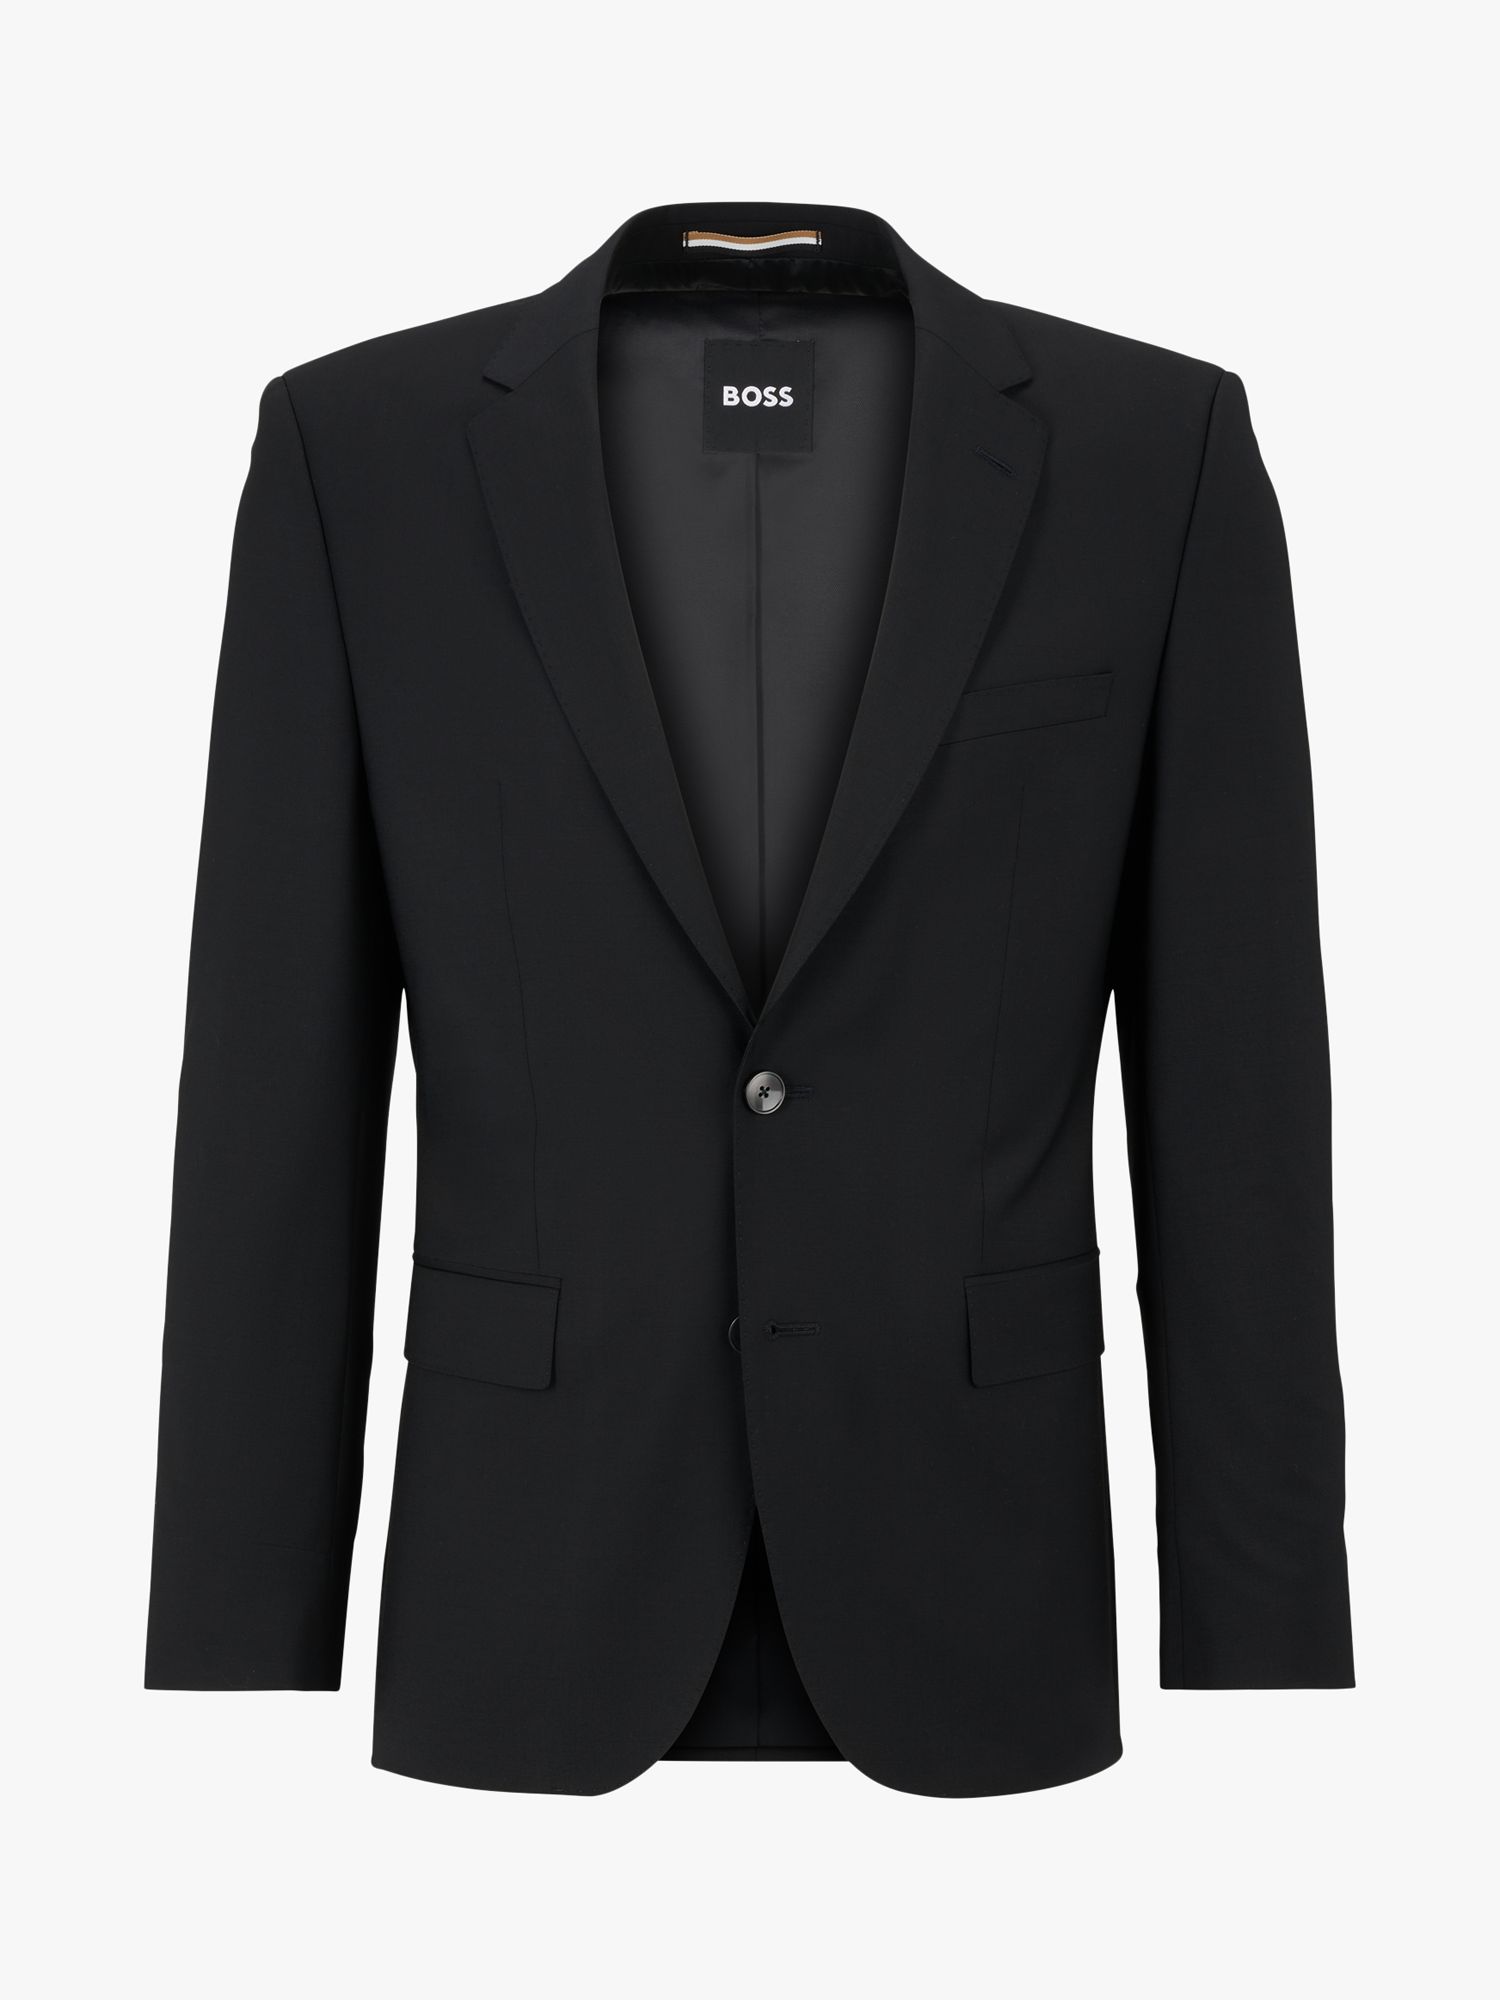 BOSS Jasper Wool Blend Suit Jacket, Black